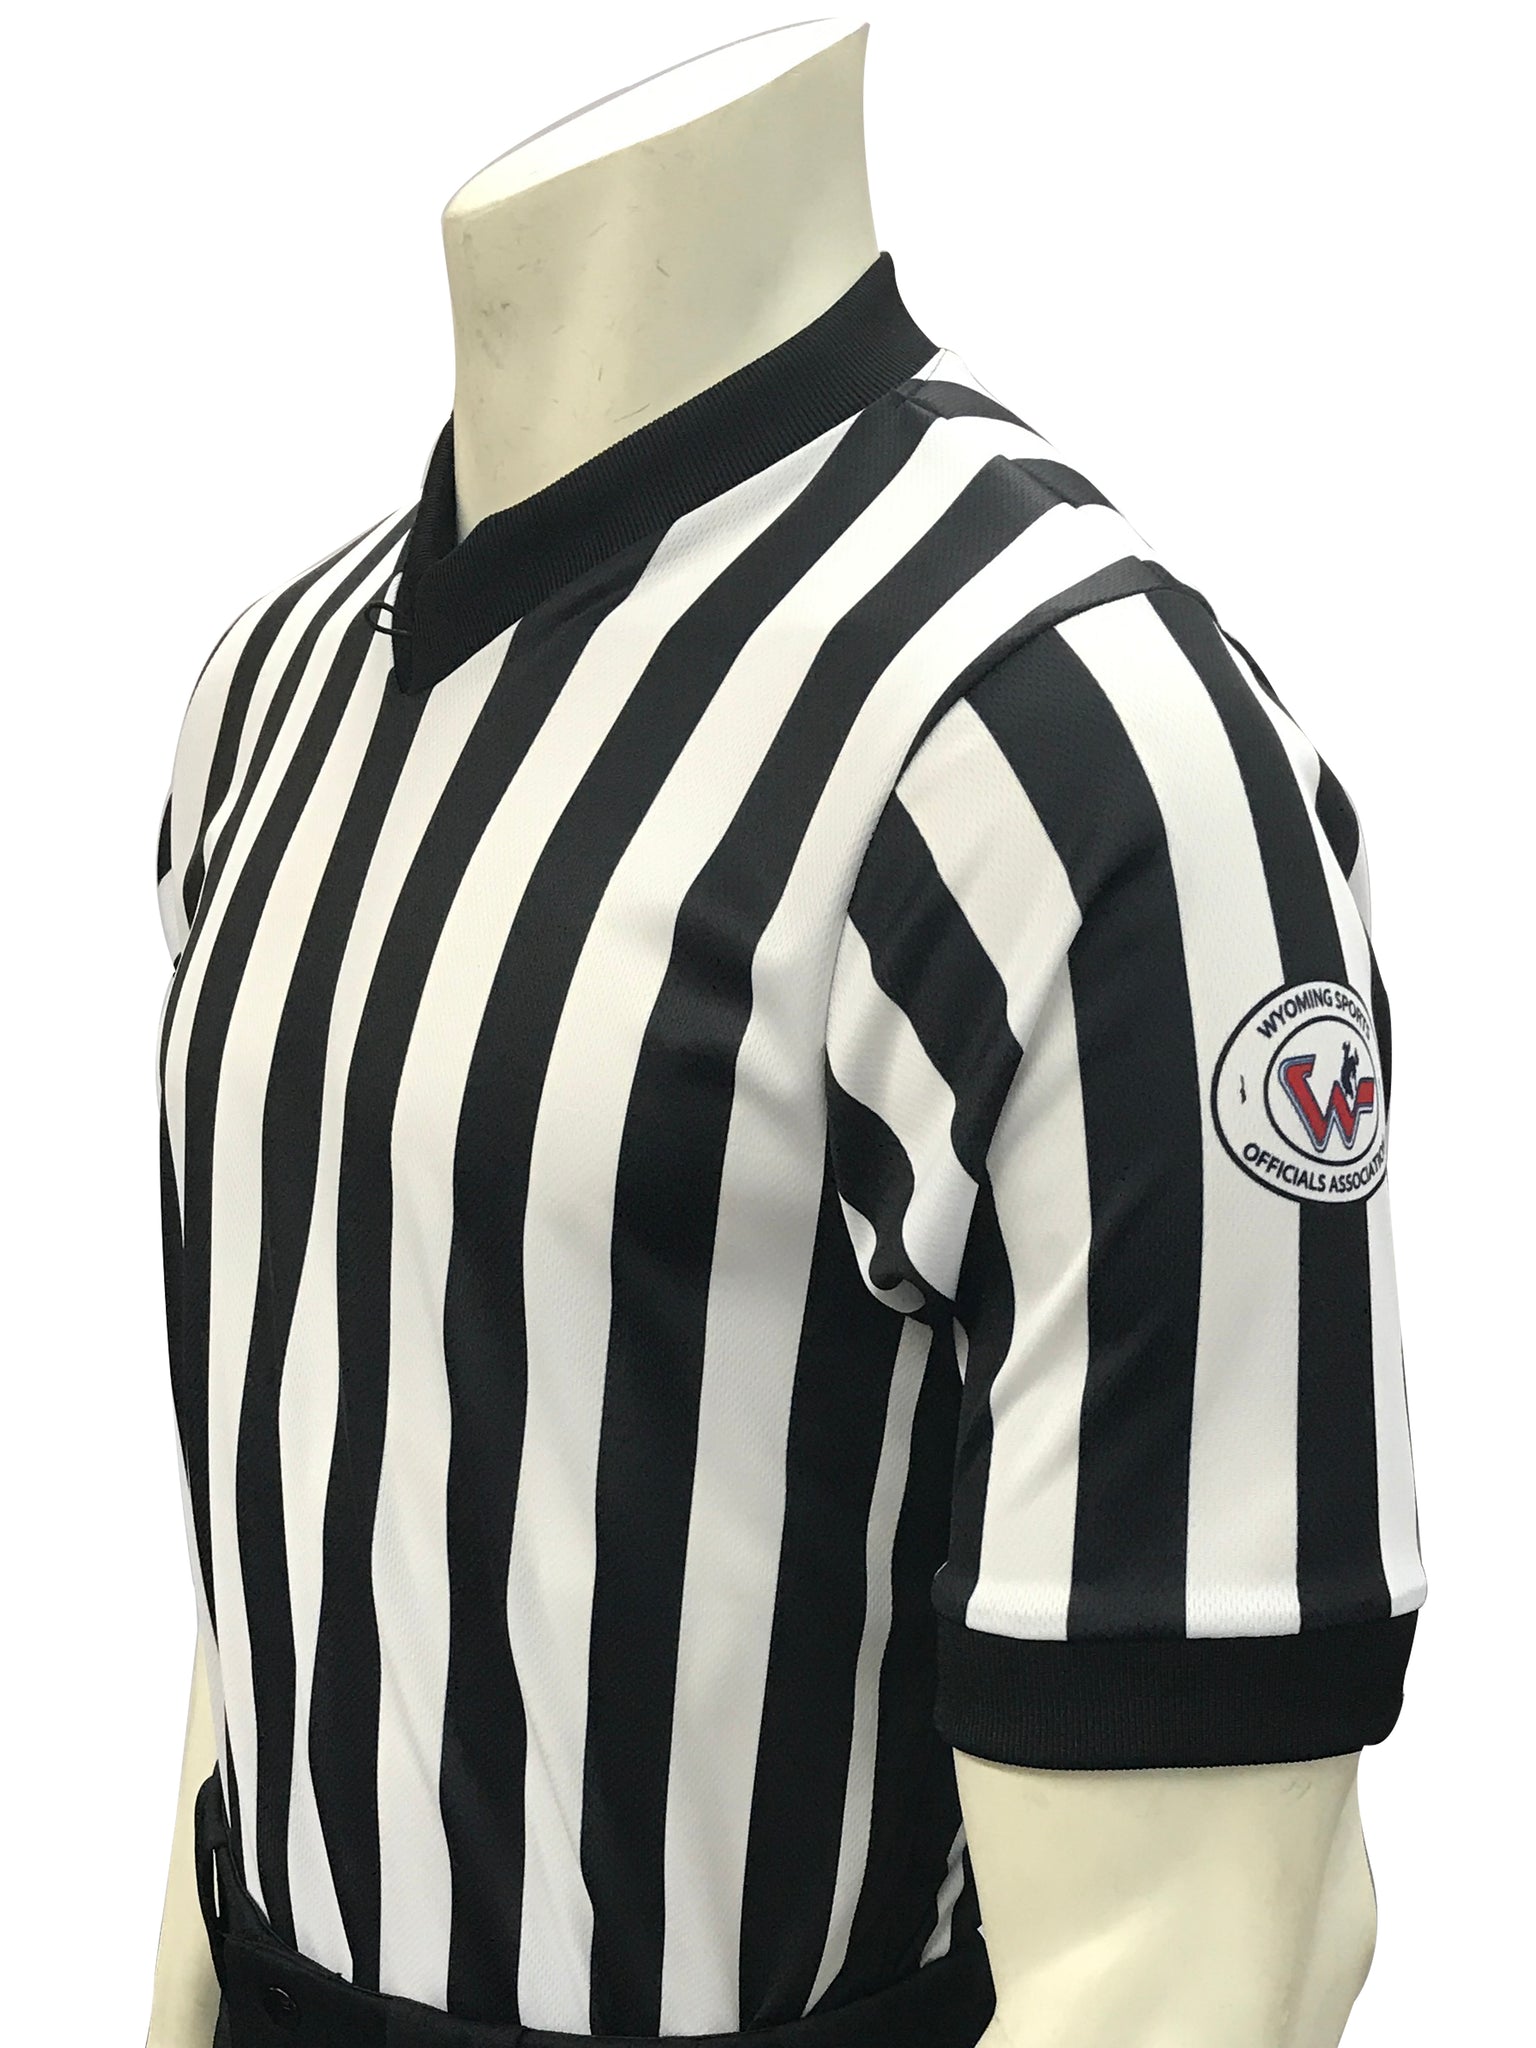 USA201WY-607 - Smitty "Made in USA" - "BODY FLEX" Short Sleeve Basketball/Wrestling V-Neck Shirt